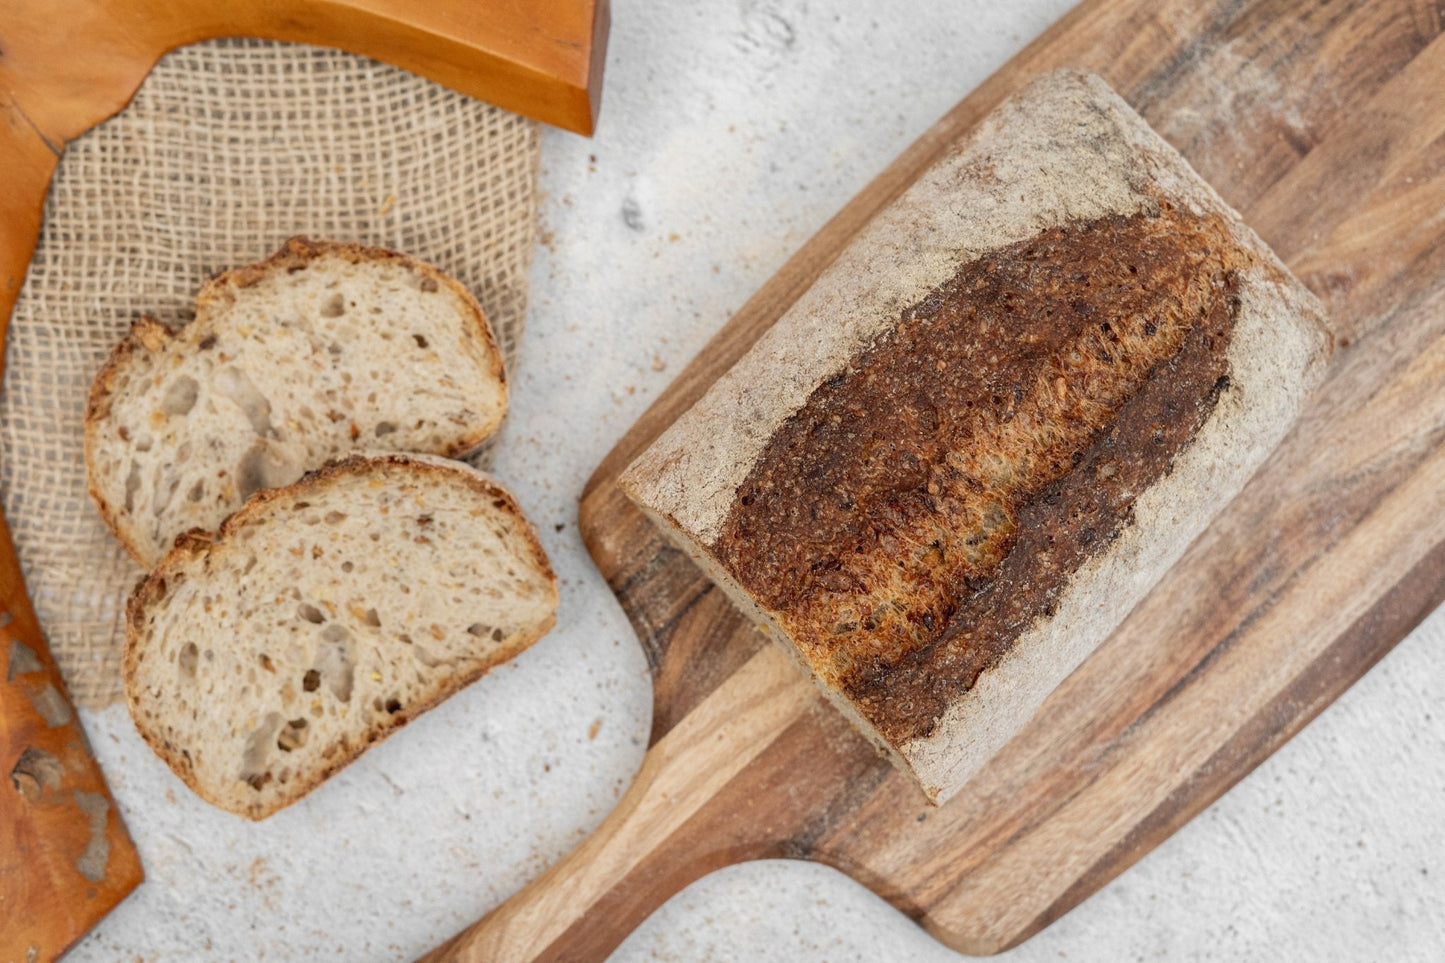 (6 loaves) Multi-Seed Bread | Sandwich Style | Sourdough - BREADSIE Bakery